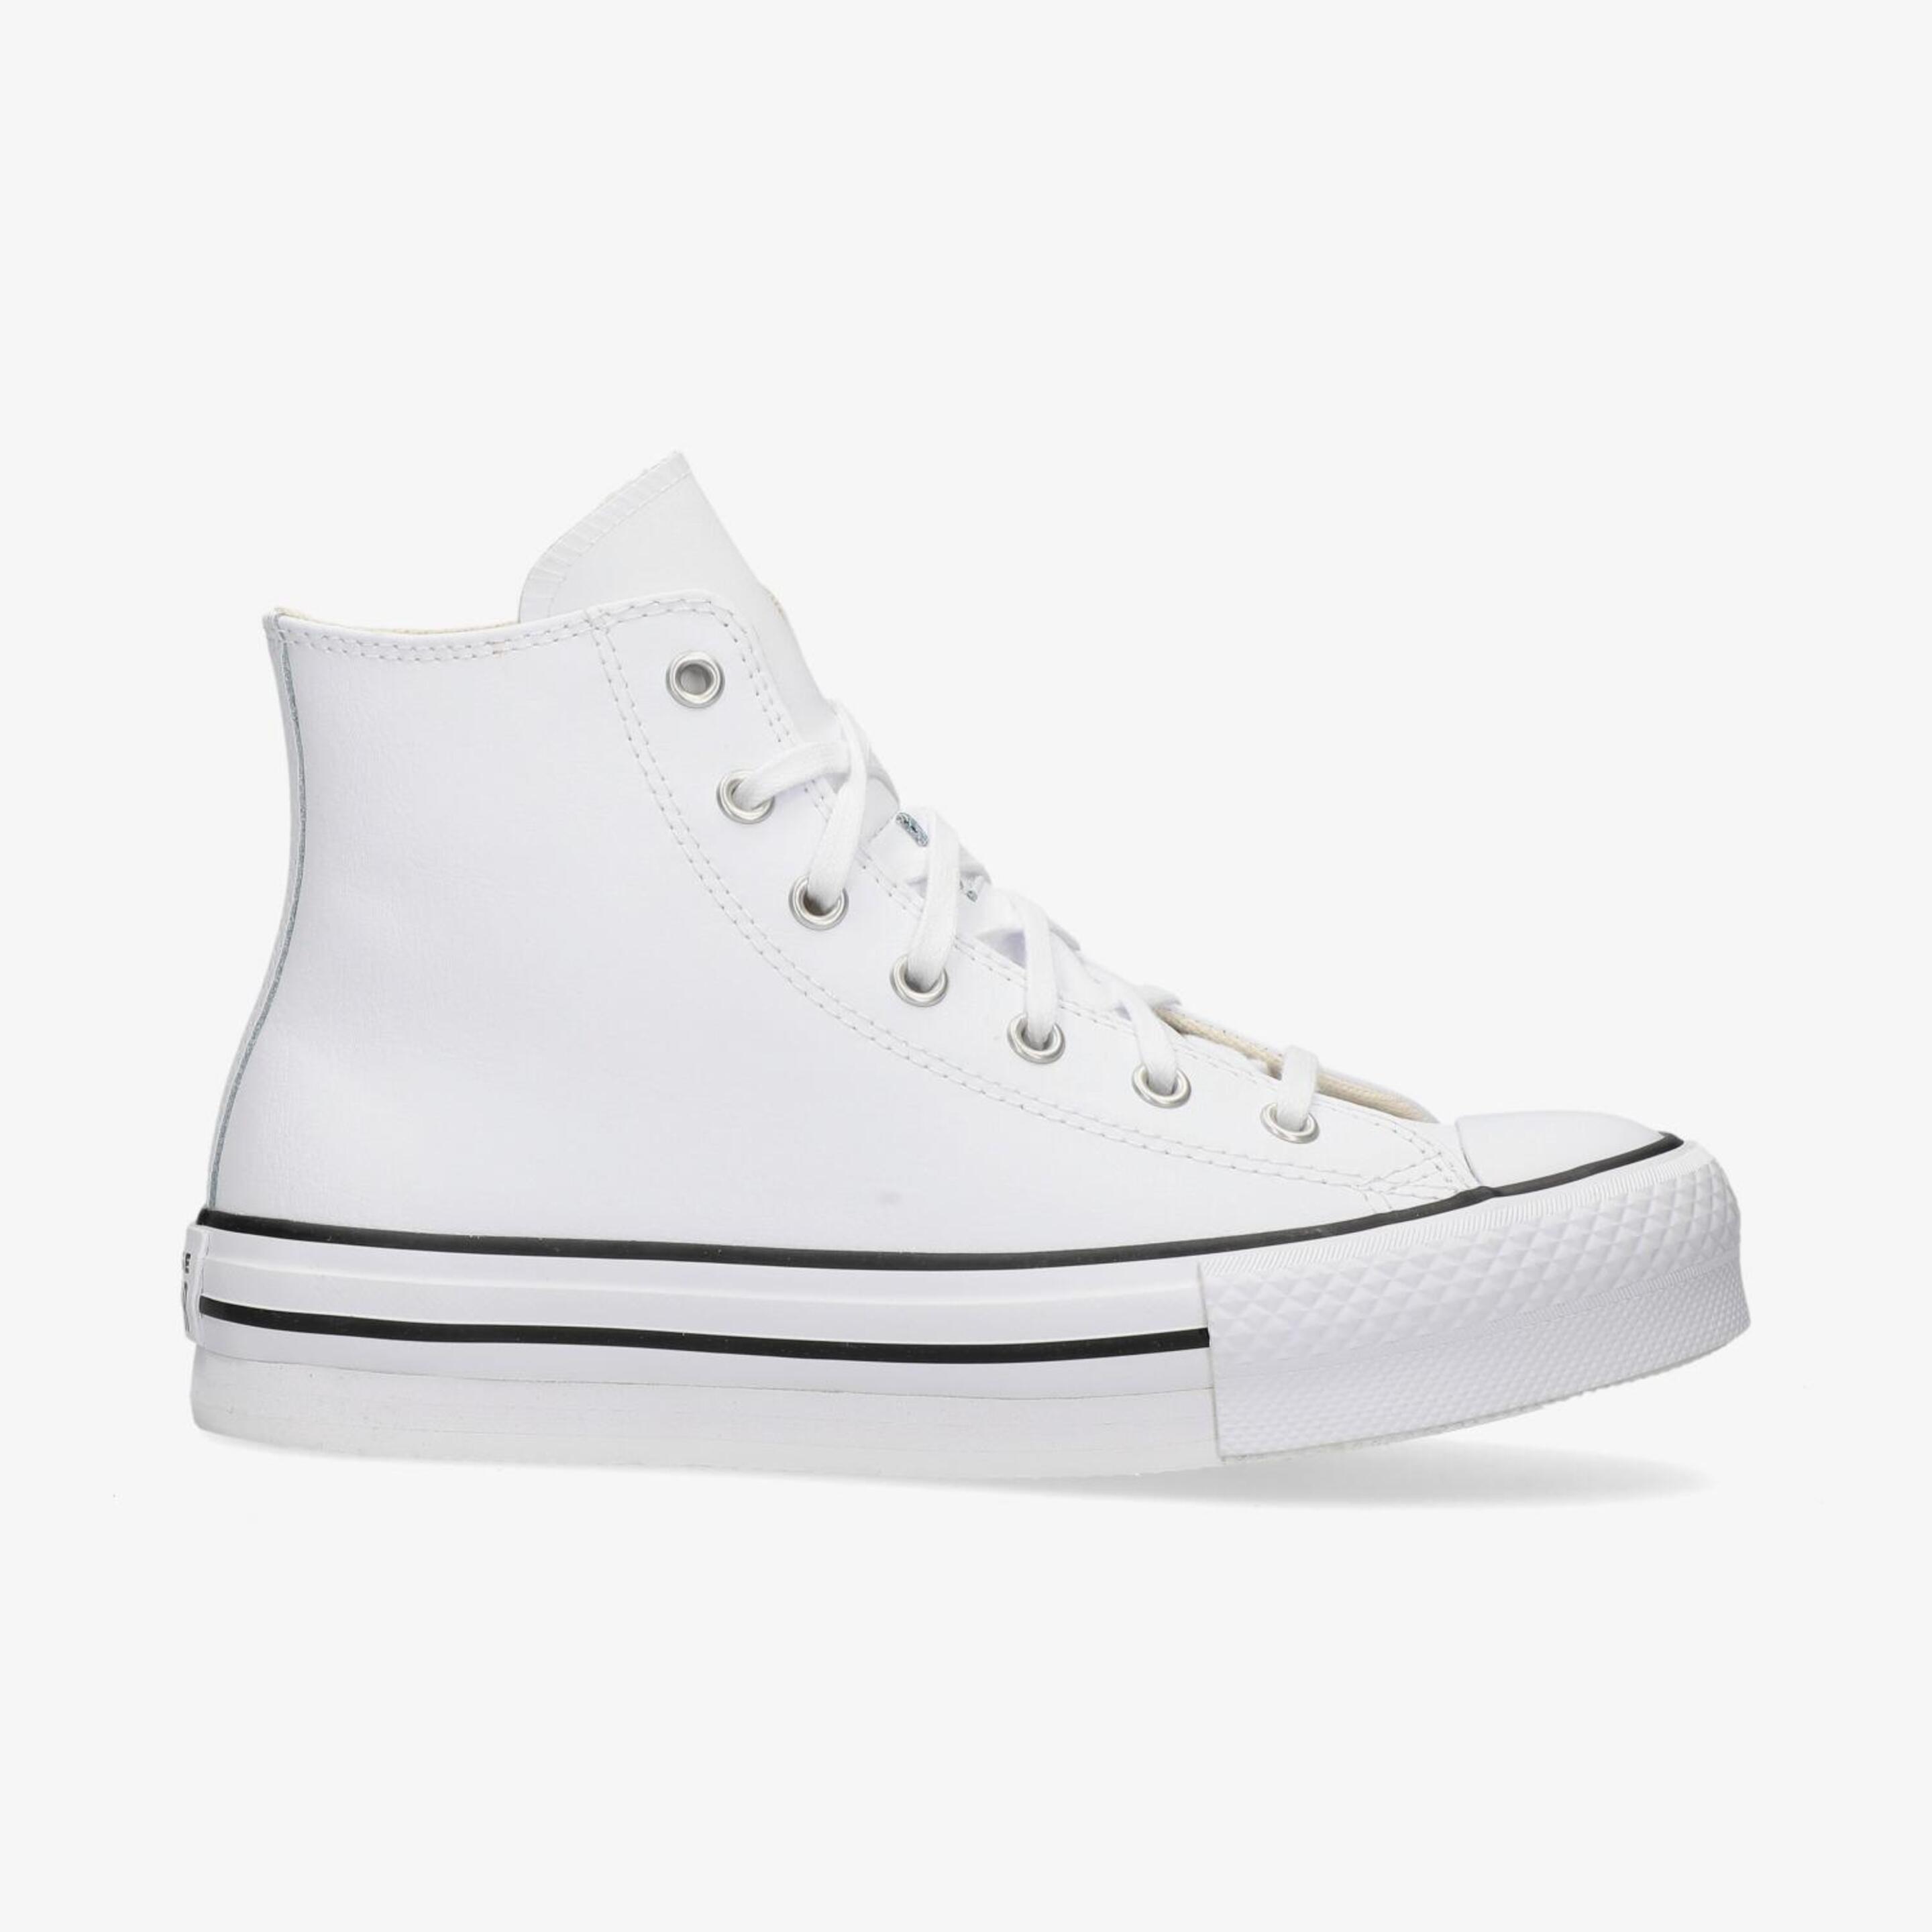 Converse Chuck Taylor All Star Leather - blanco - Zapatillas Niña